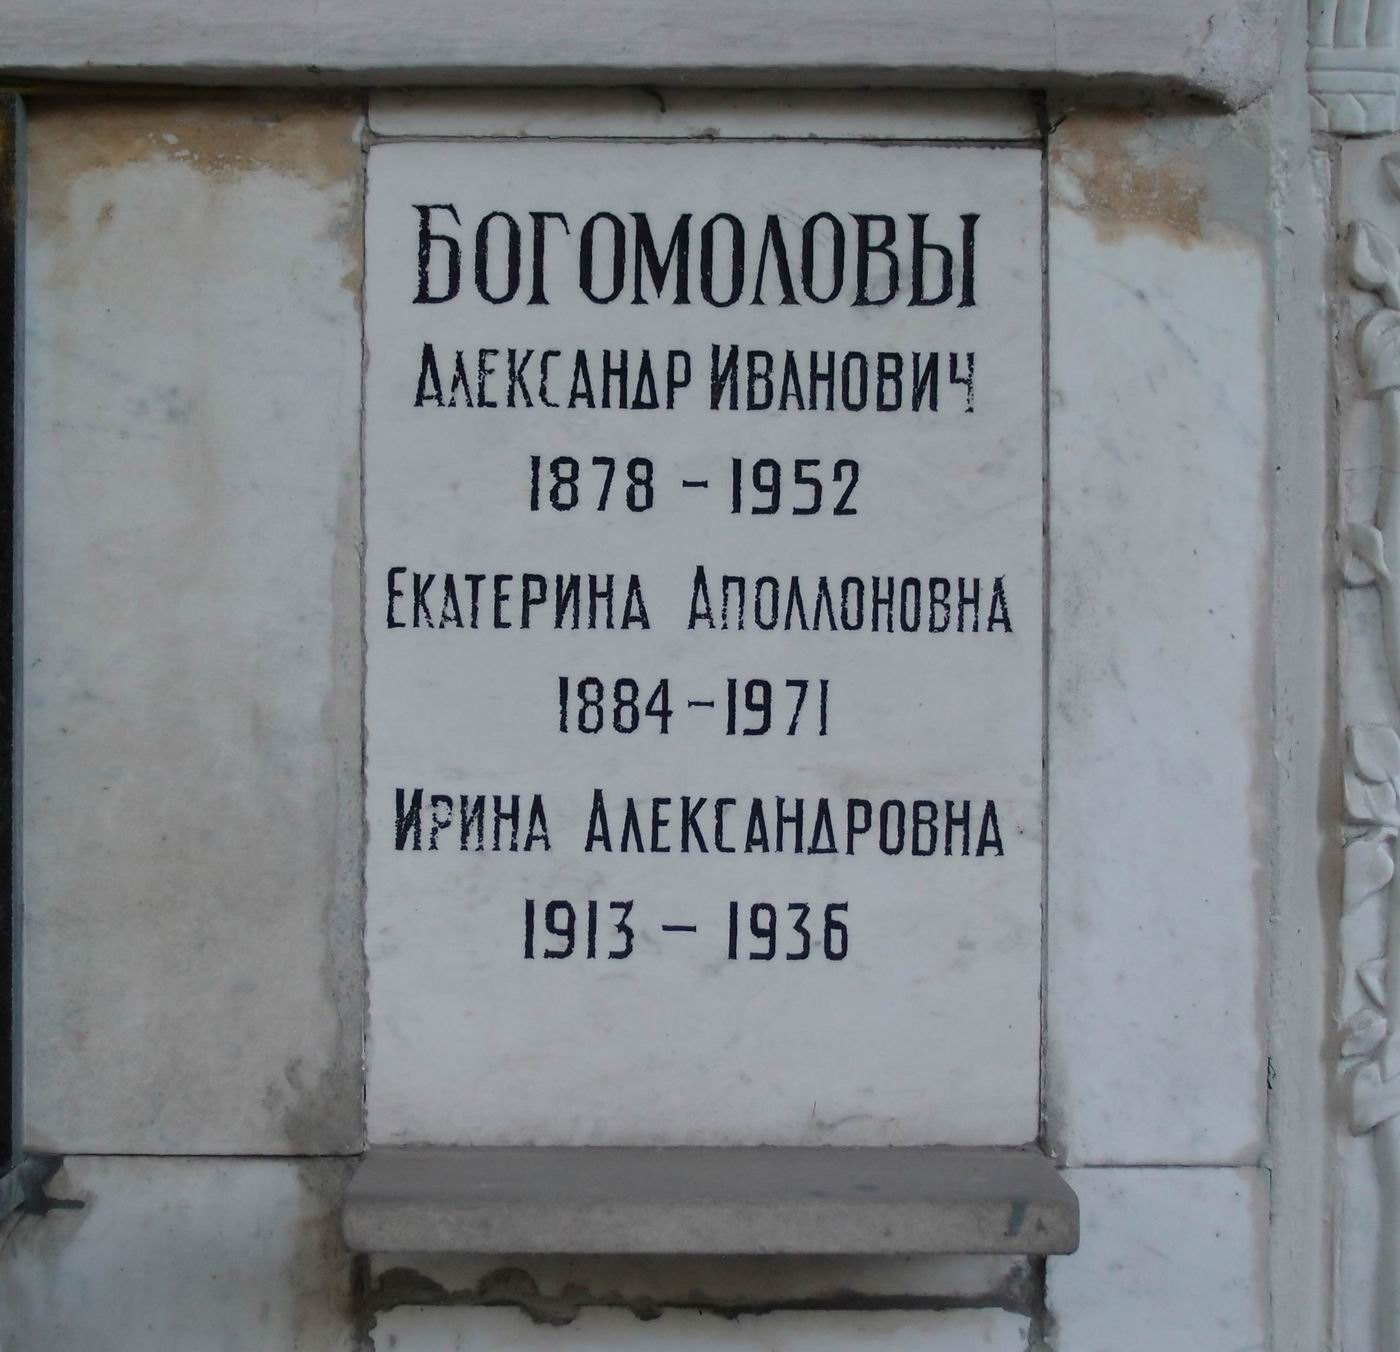 Плита на нише Богомолова А.И. (1878–1952), на Новодевичьем кладбище (колумбарий [80]–5–1).